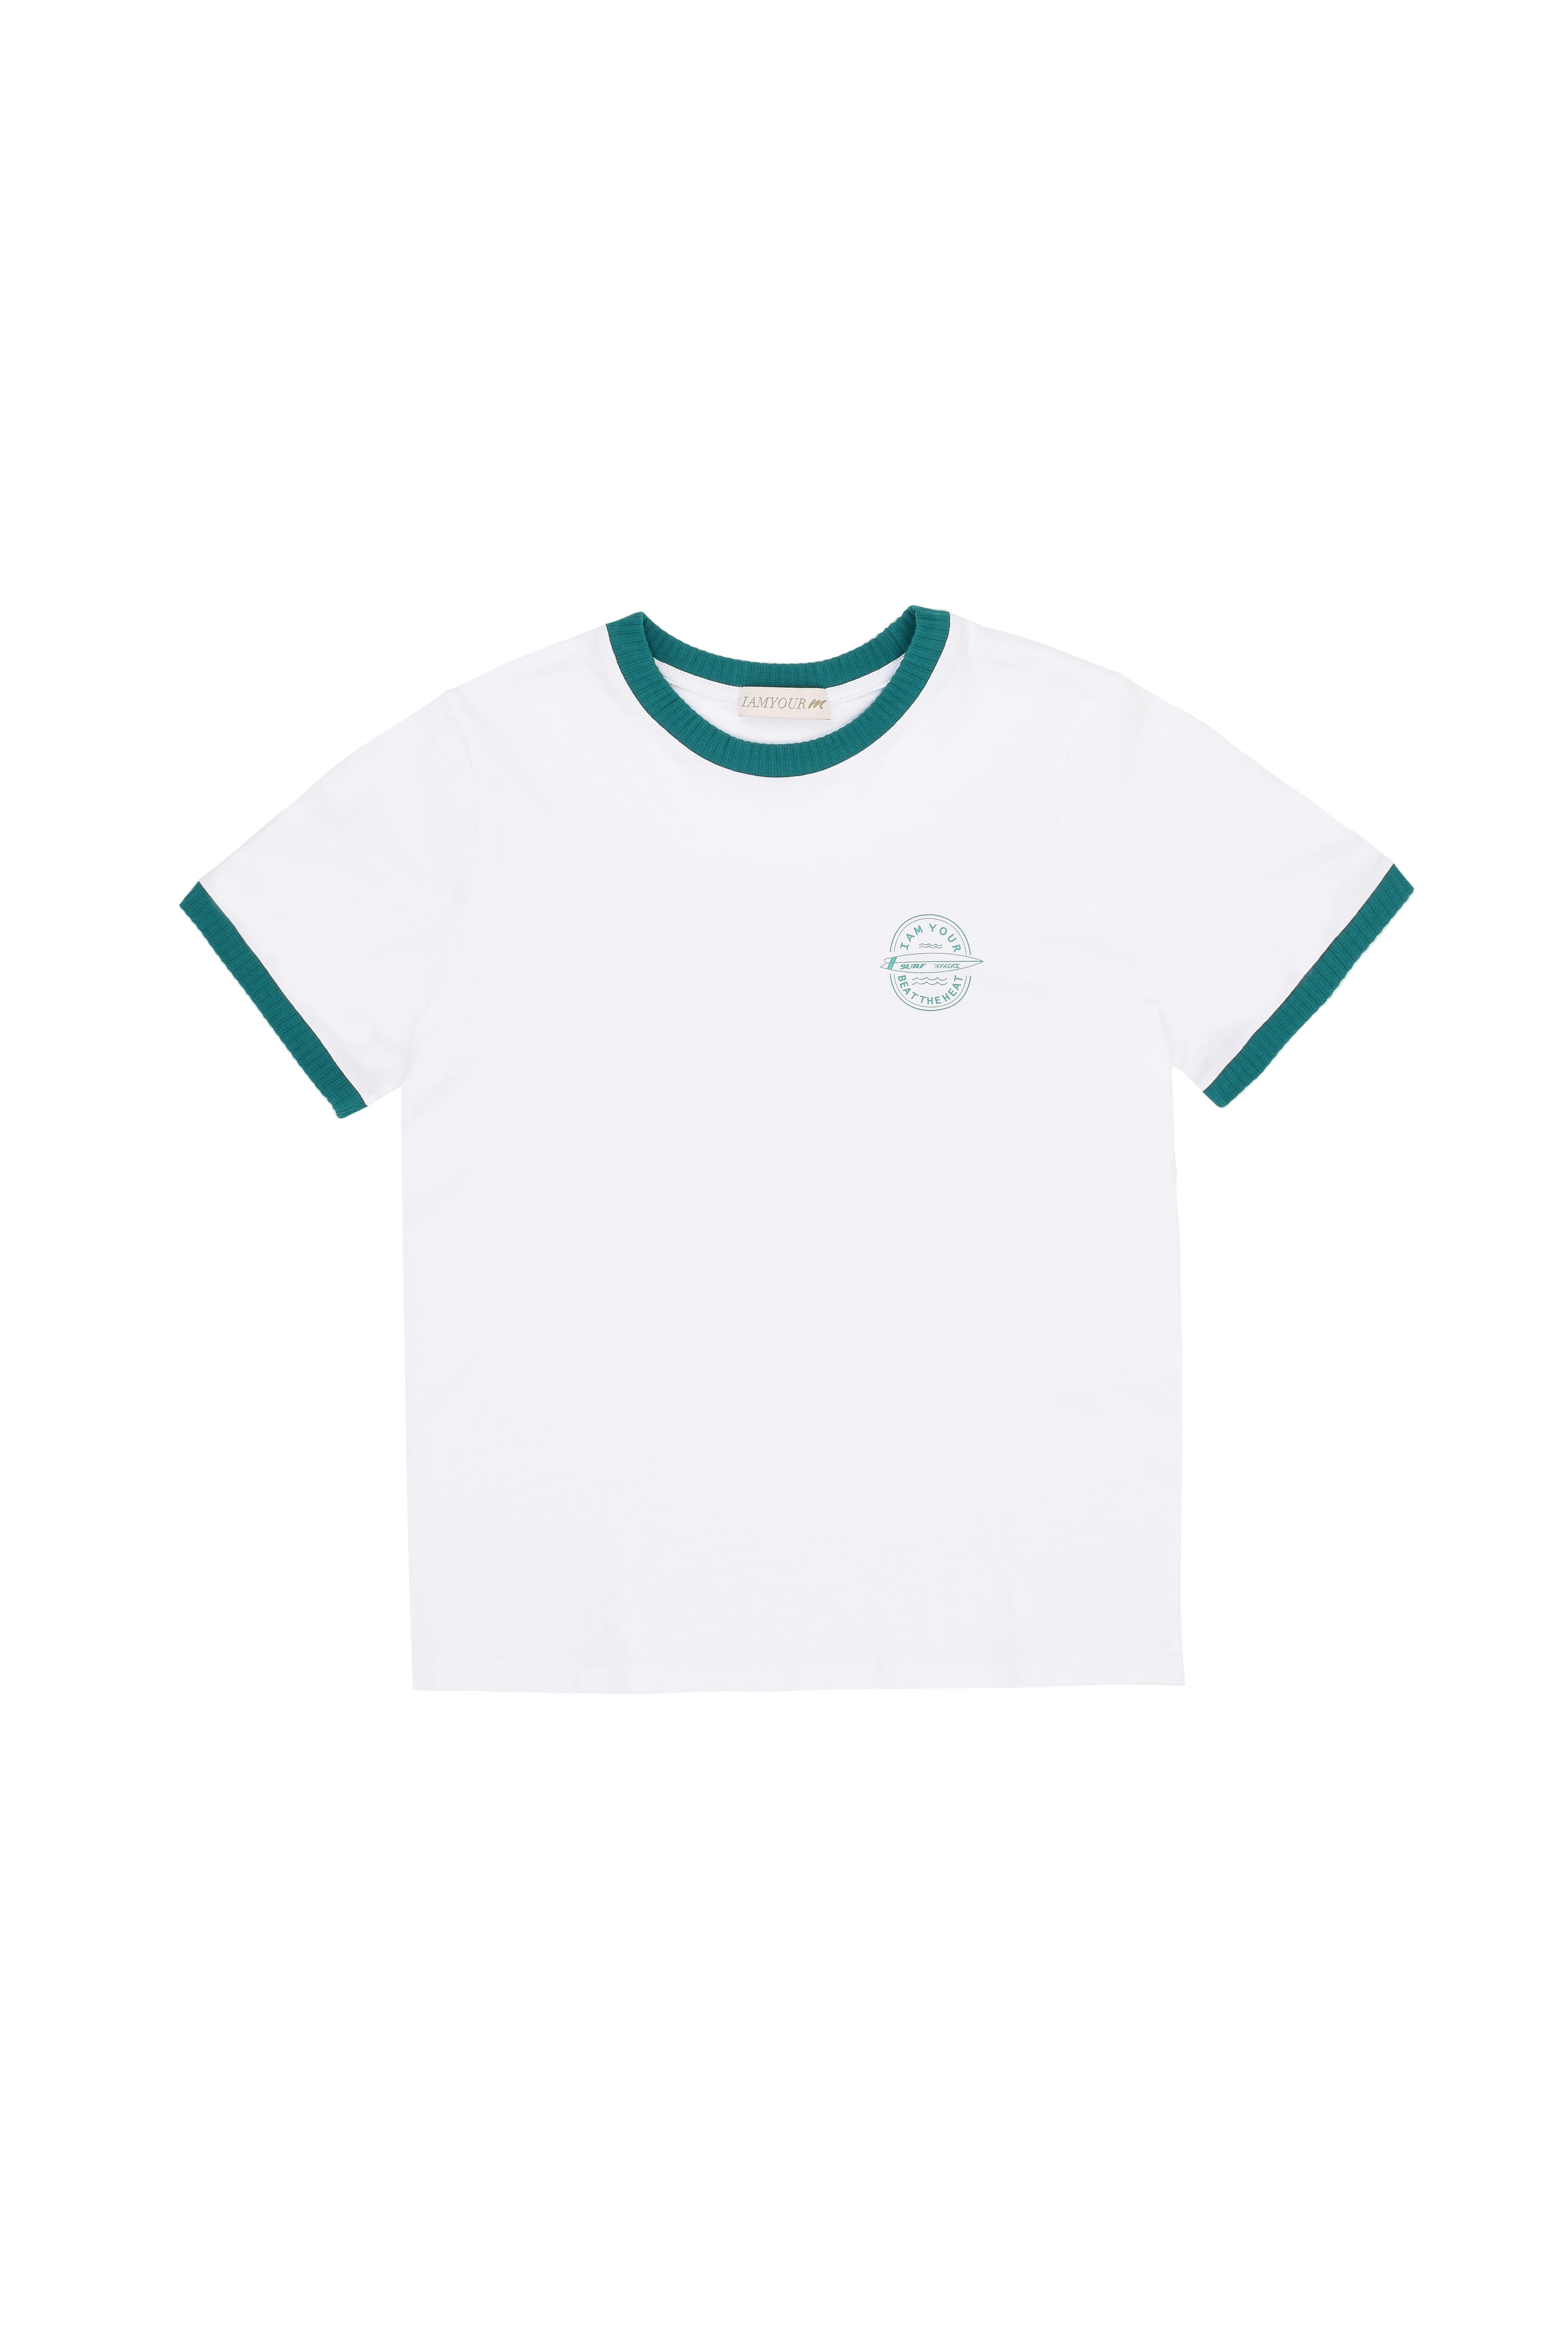 50%--Surf wave T-shirt (green)